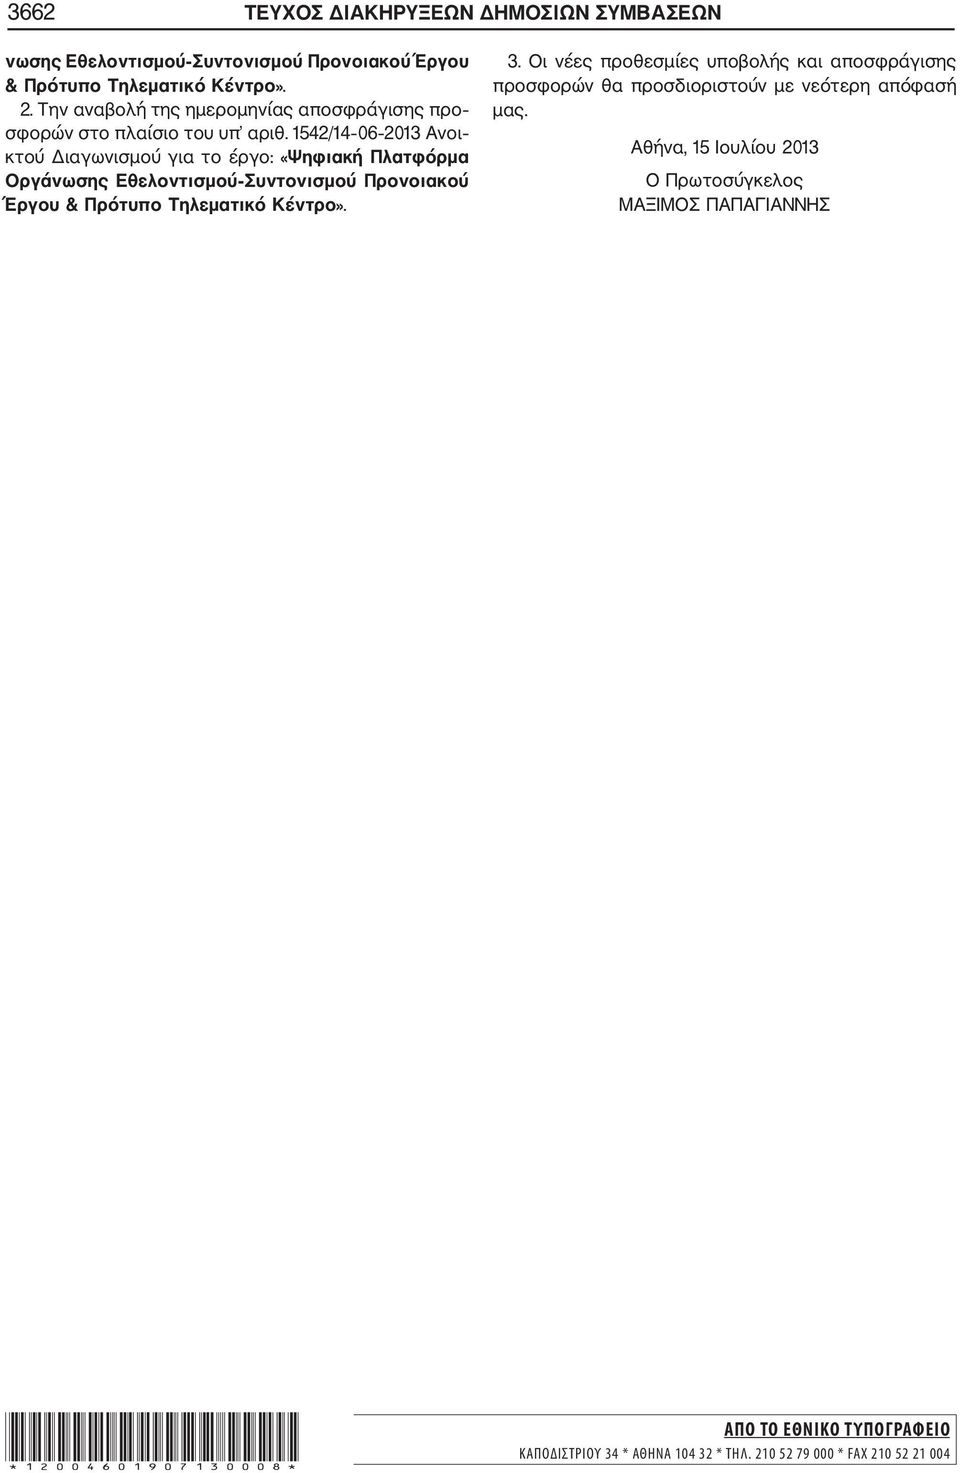 1542/14 06 2013 Ανοι κτού Διαγωνισμού για το έργο: «Ψηφιακή Πλατφόρμα Οργάνωσης Εθελοντισμού Συντονισμού Προνοιακού Έργου & Πρότυπο Τηλεματικό Κέντρο». 3.